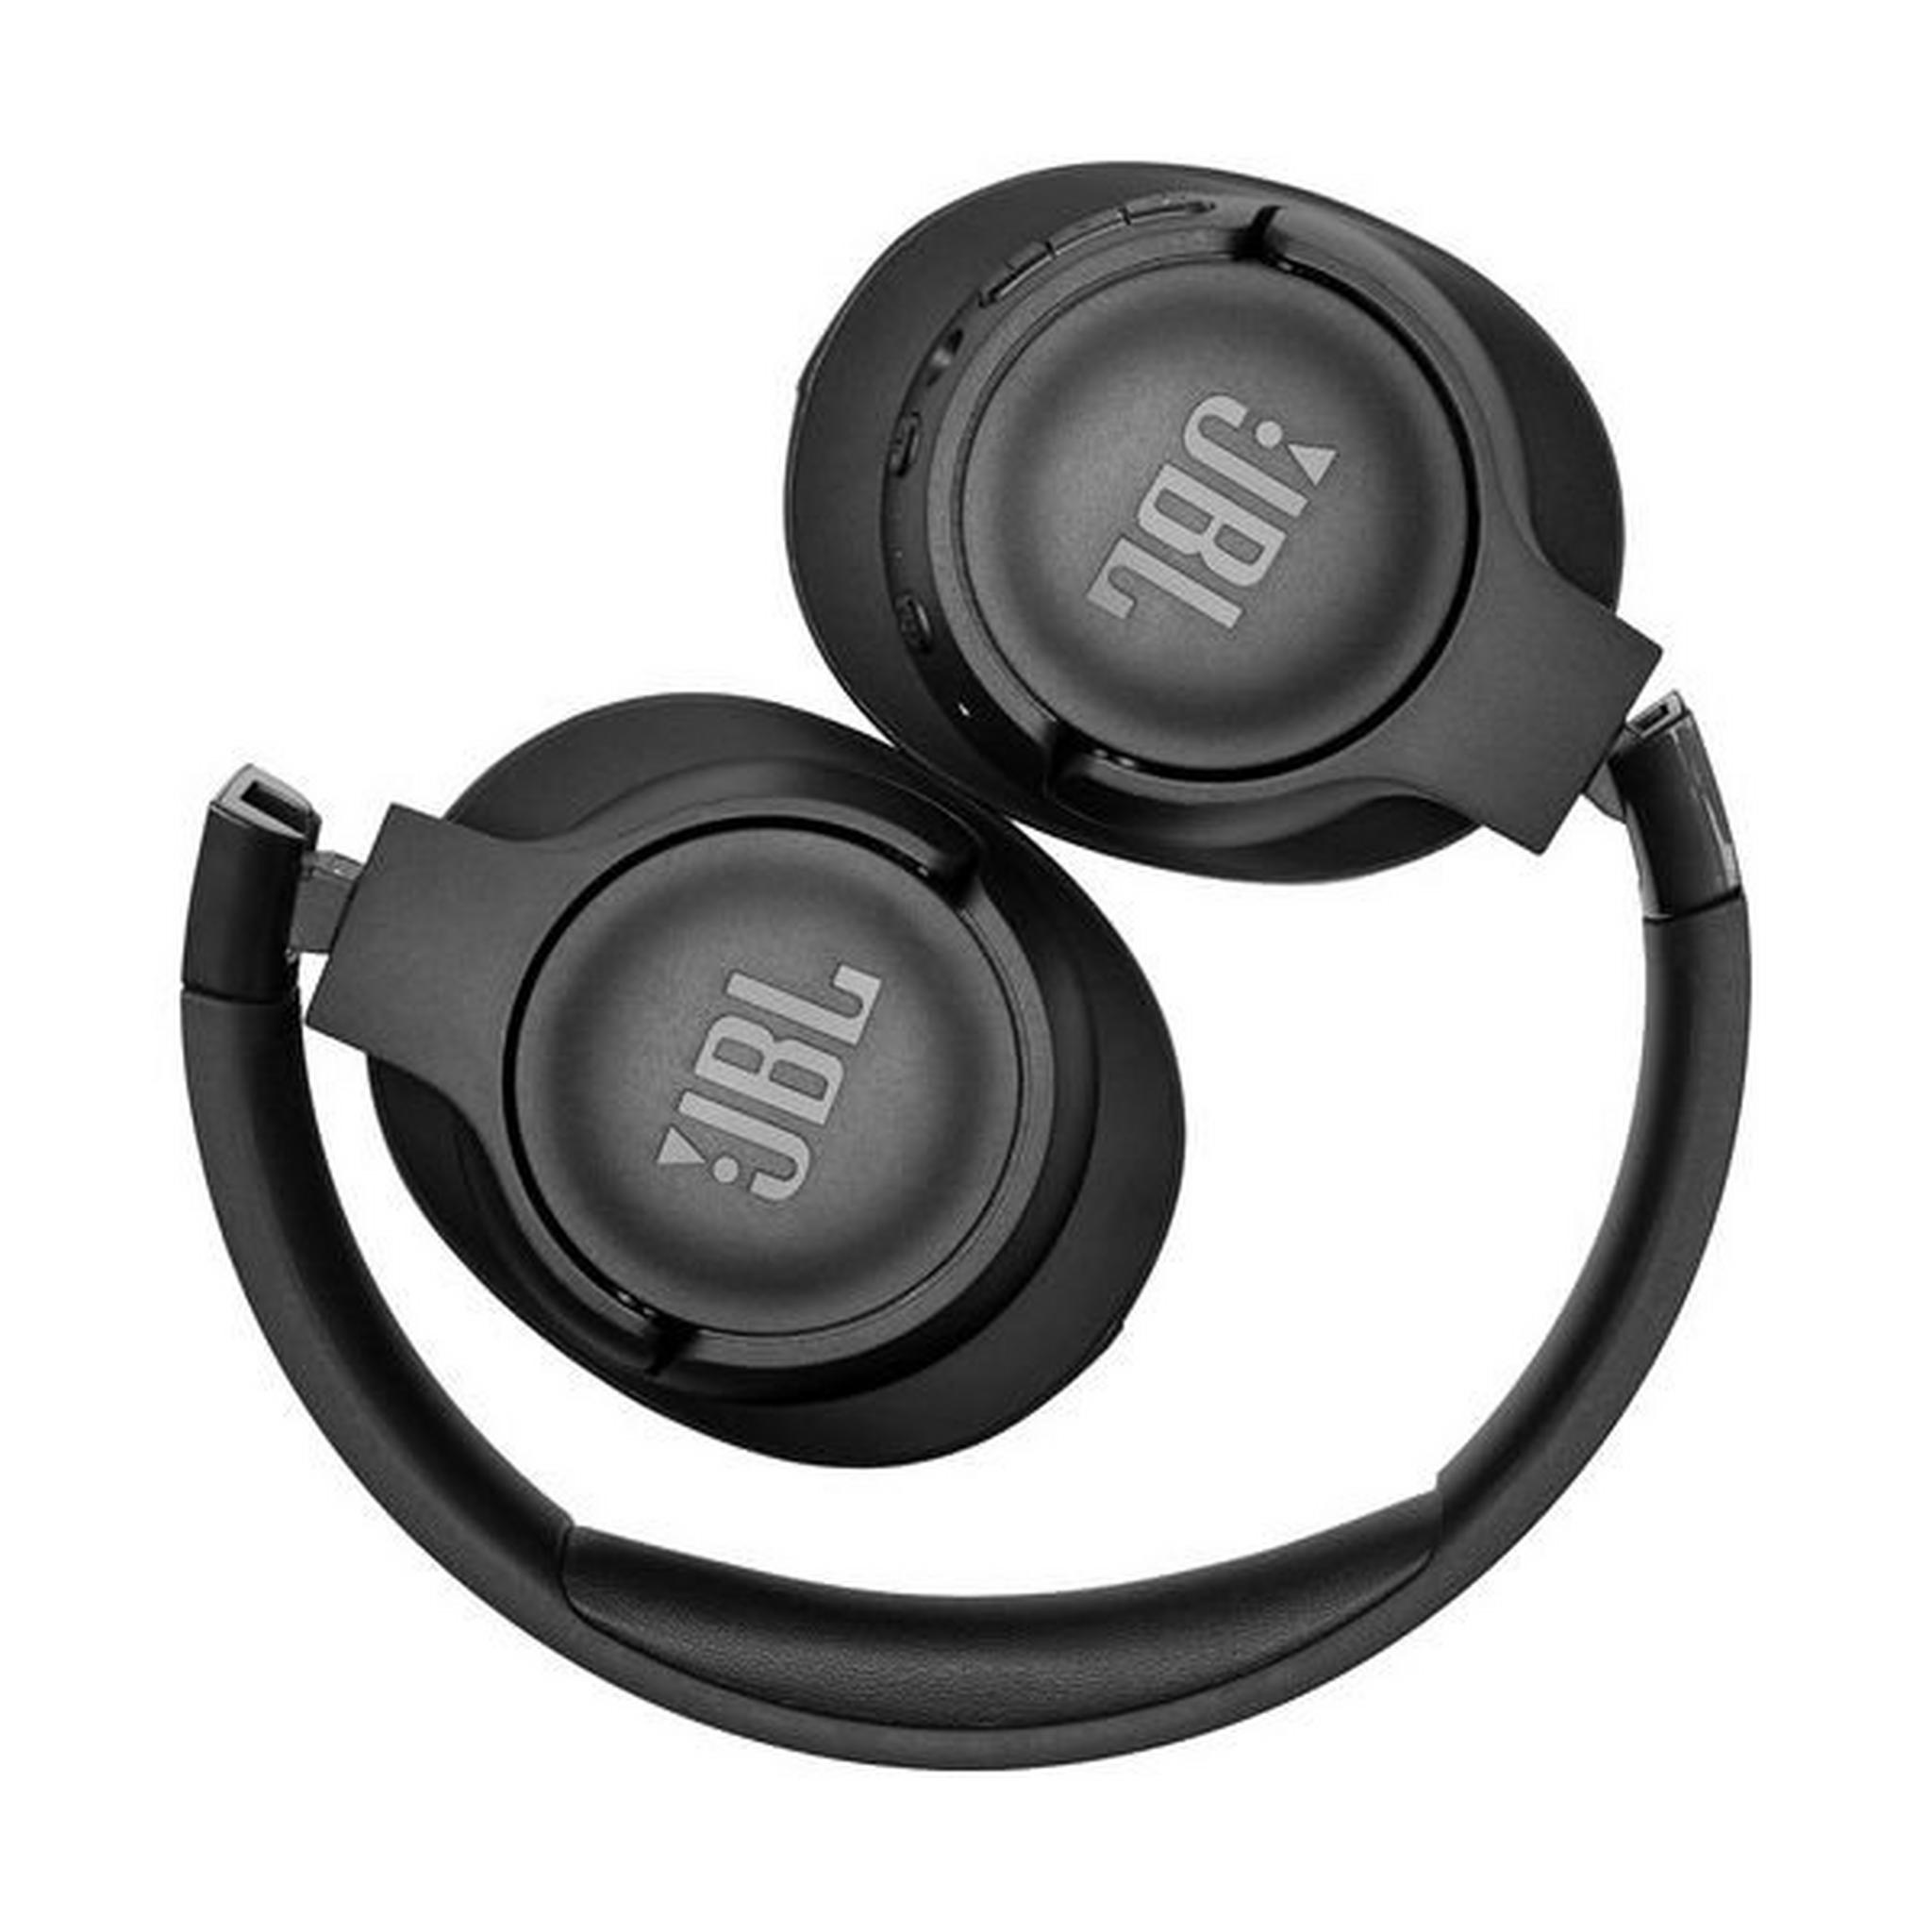 سماعة الرأس جاي بي إل تون فوق الأذن اللاسلكية مع خاصية إلغاء الضوضاء (750BTNC) - أسود